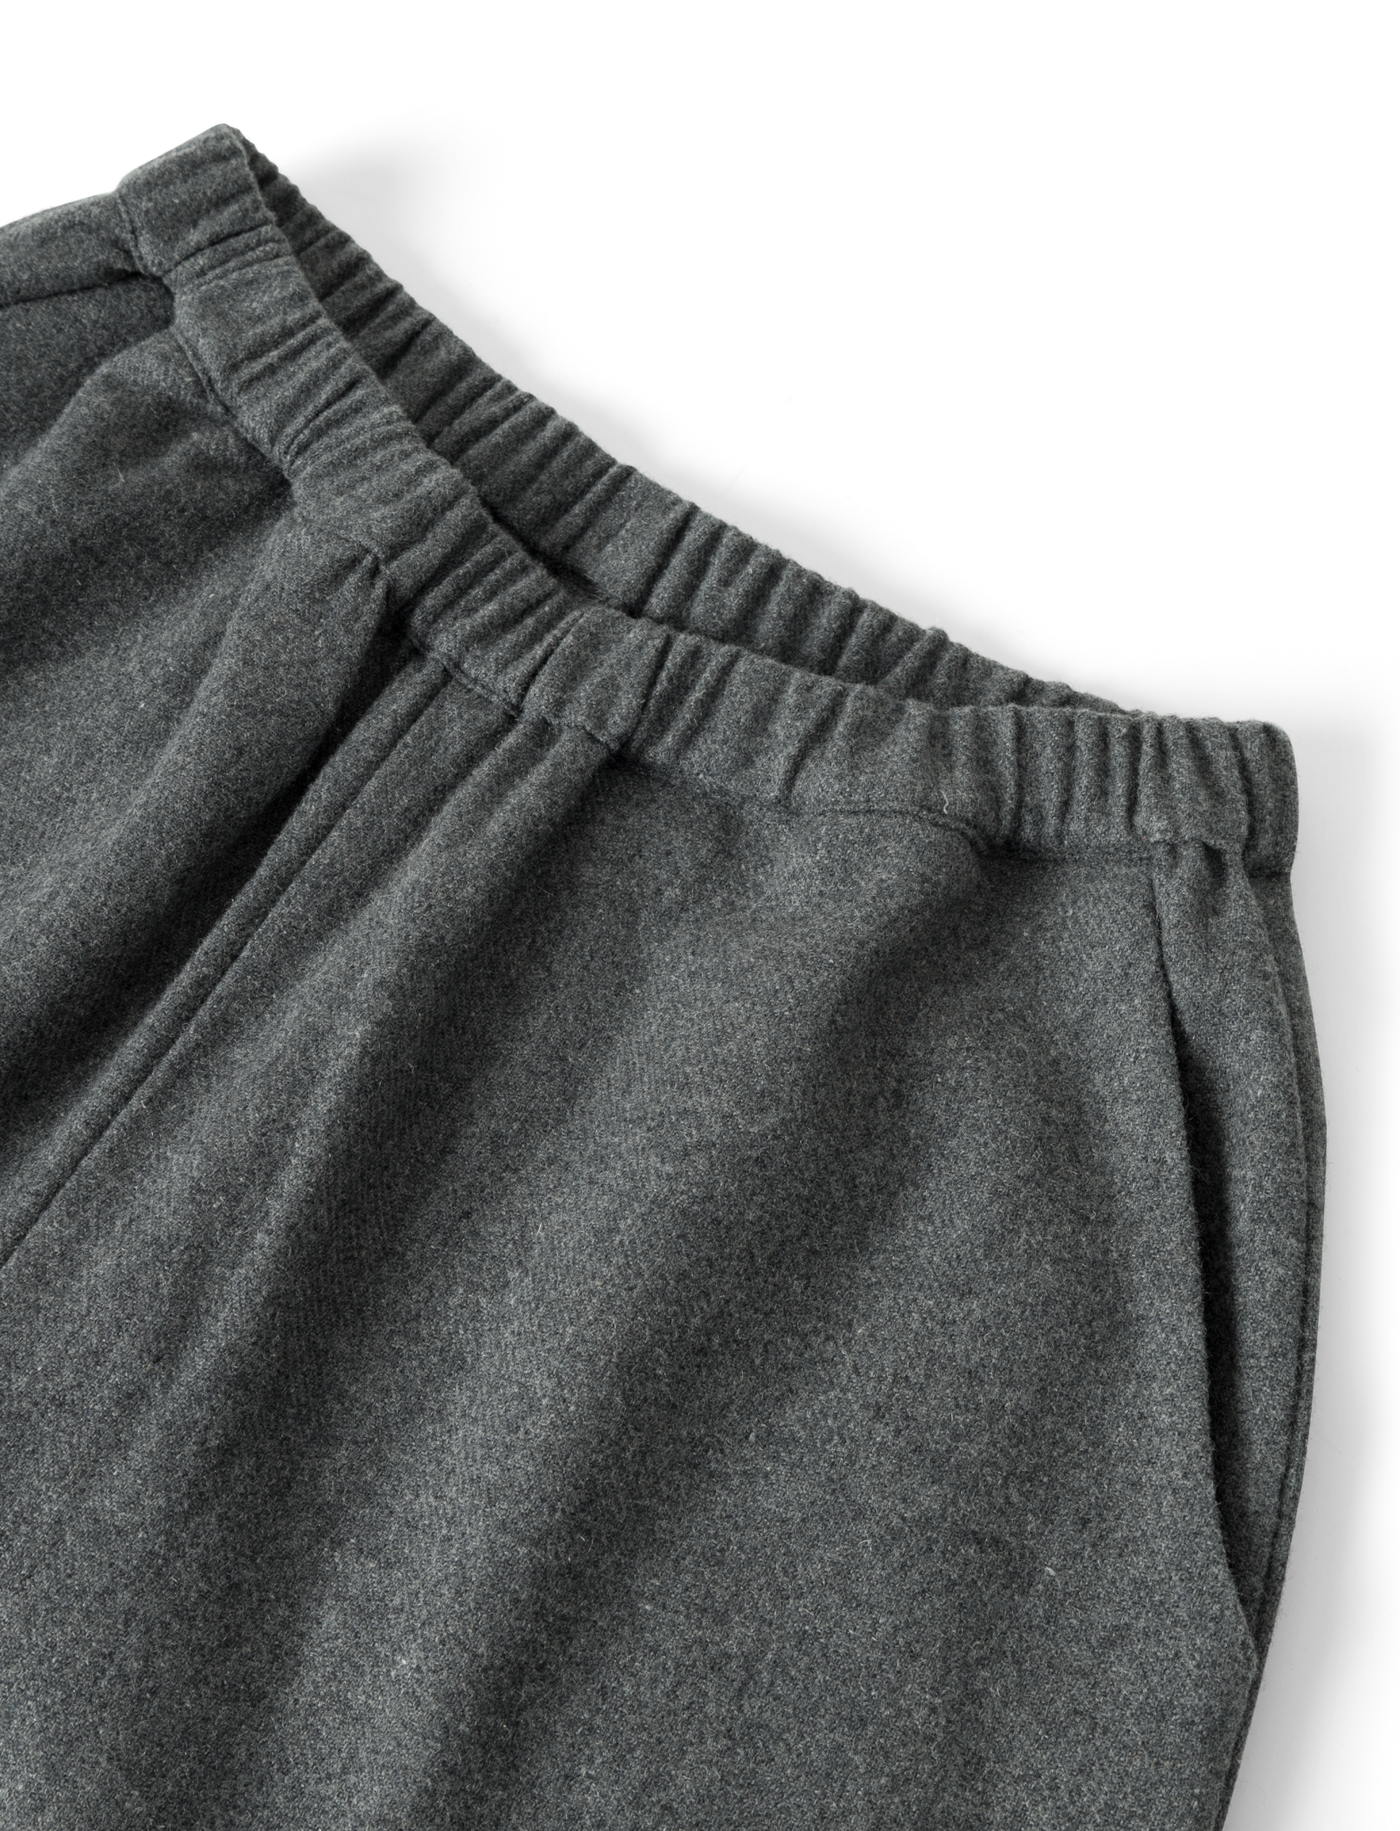 Bella Wool Pants - Dark Grey